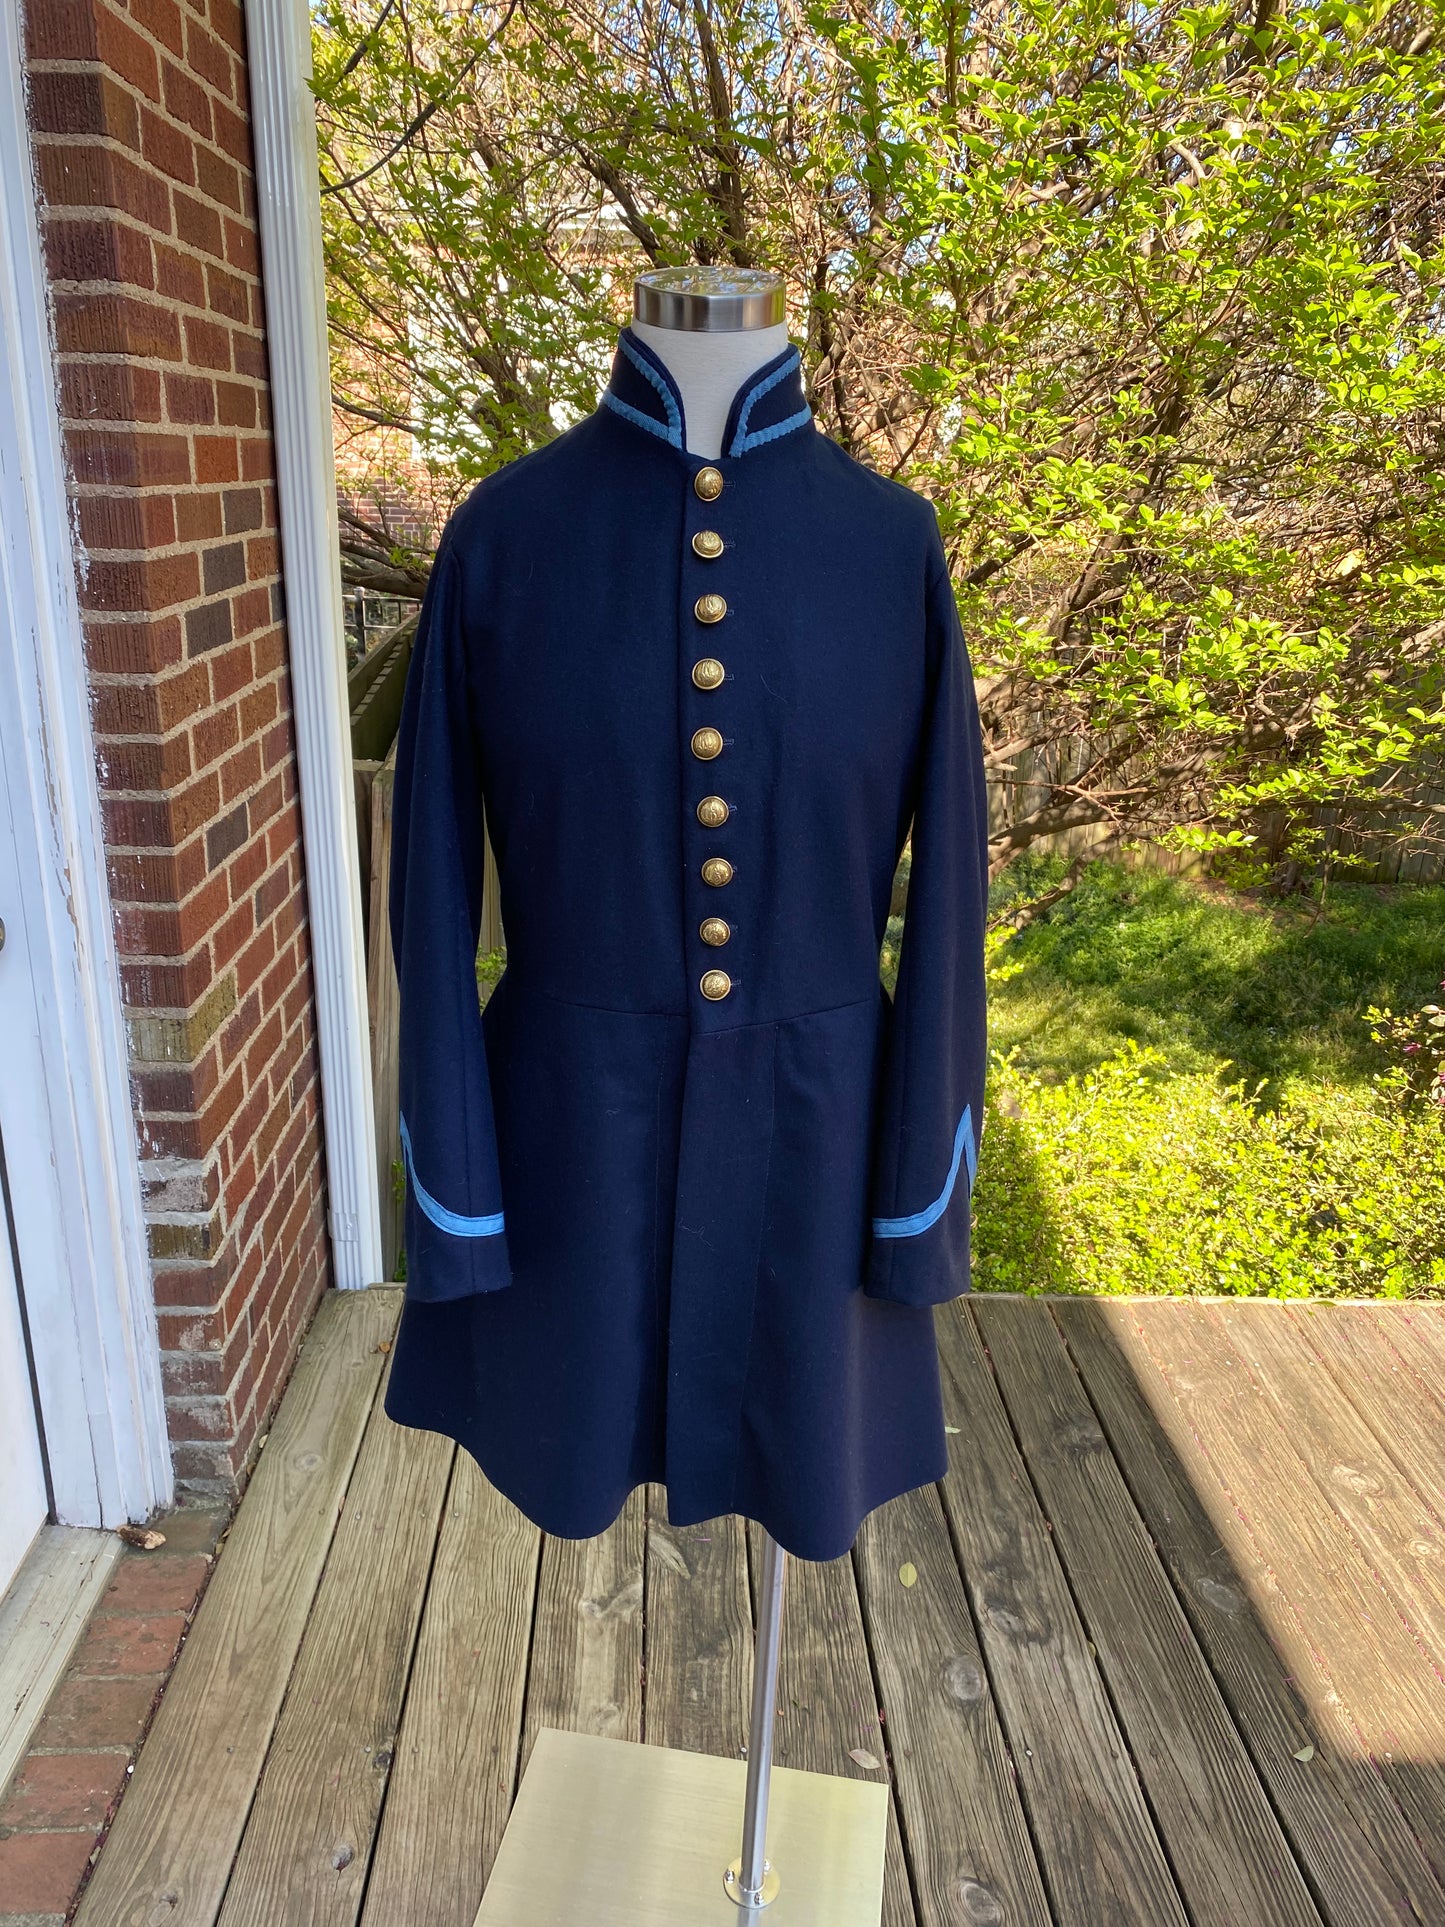 Virginia State Militia Uniform 1859